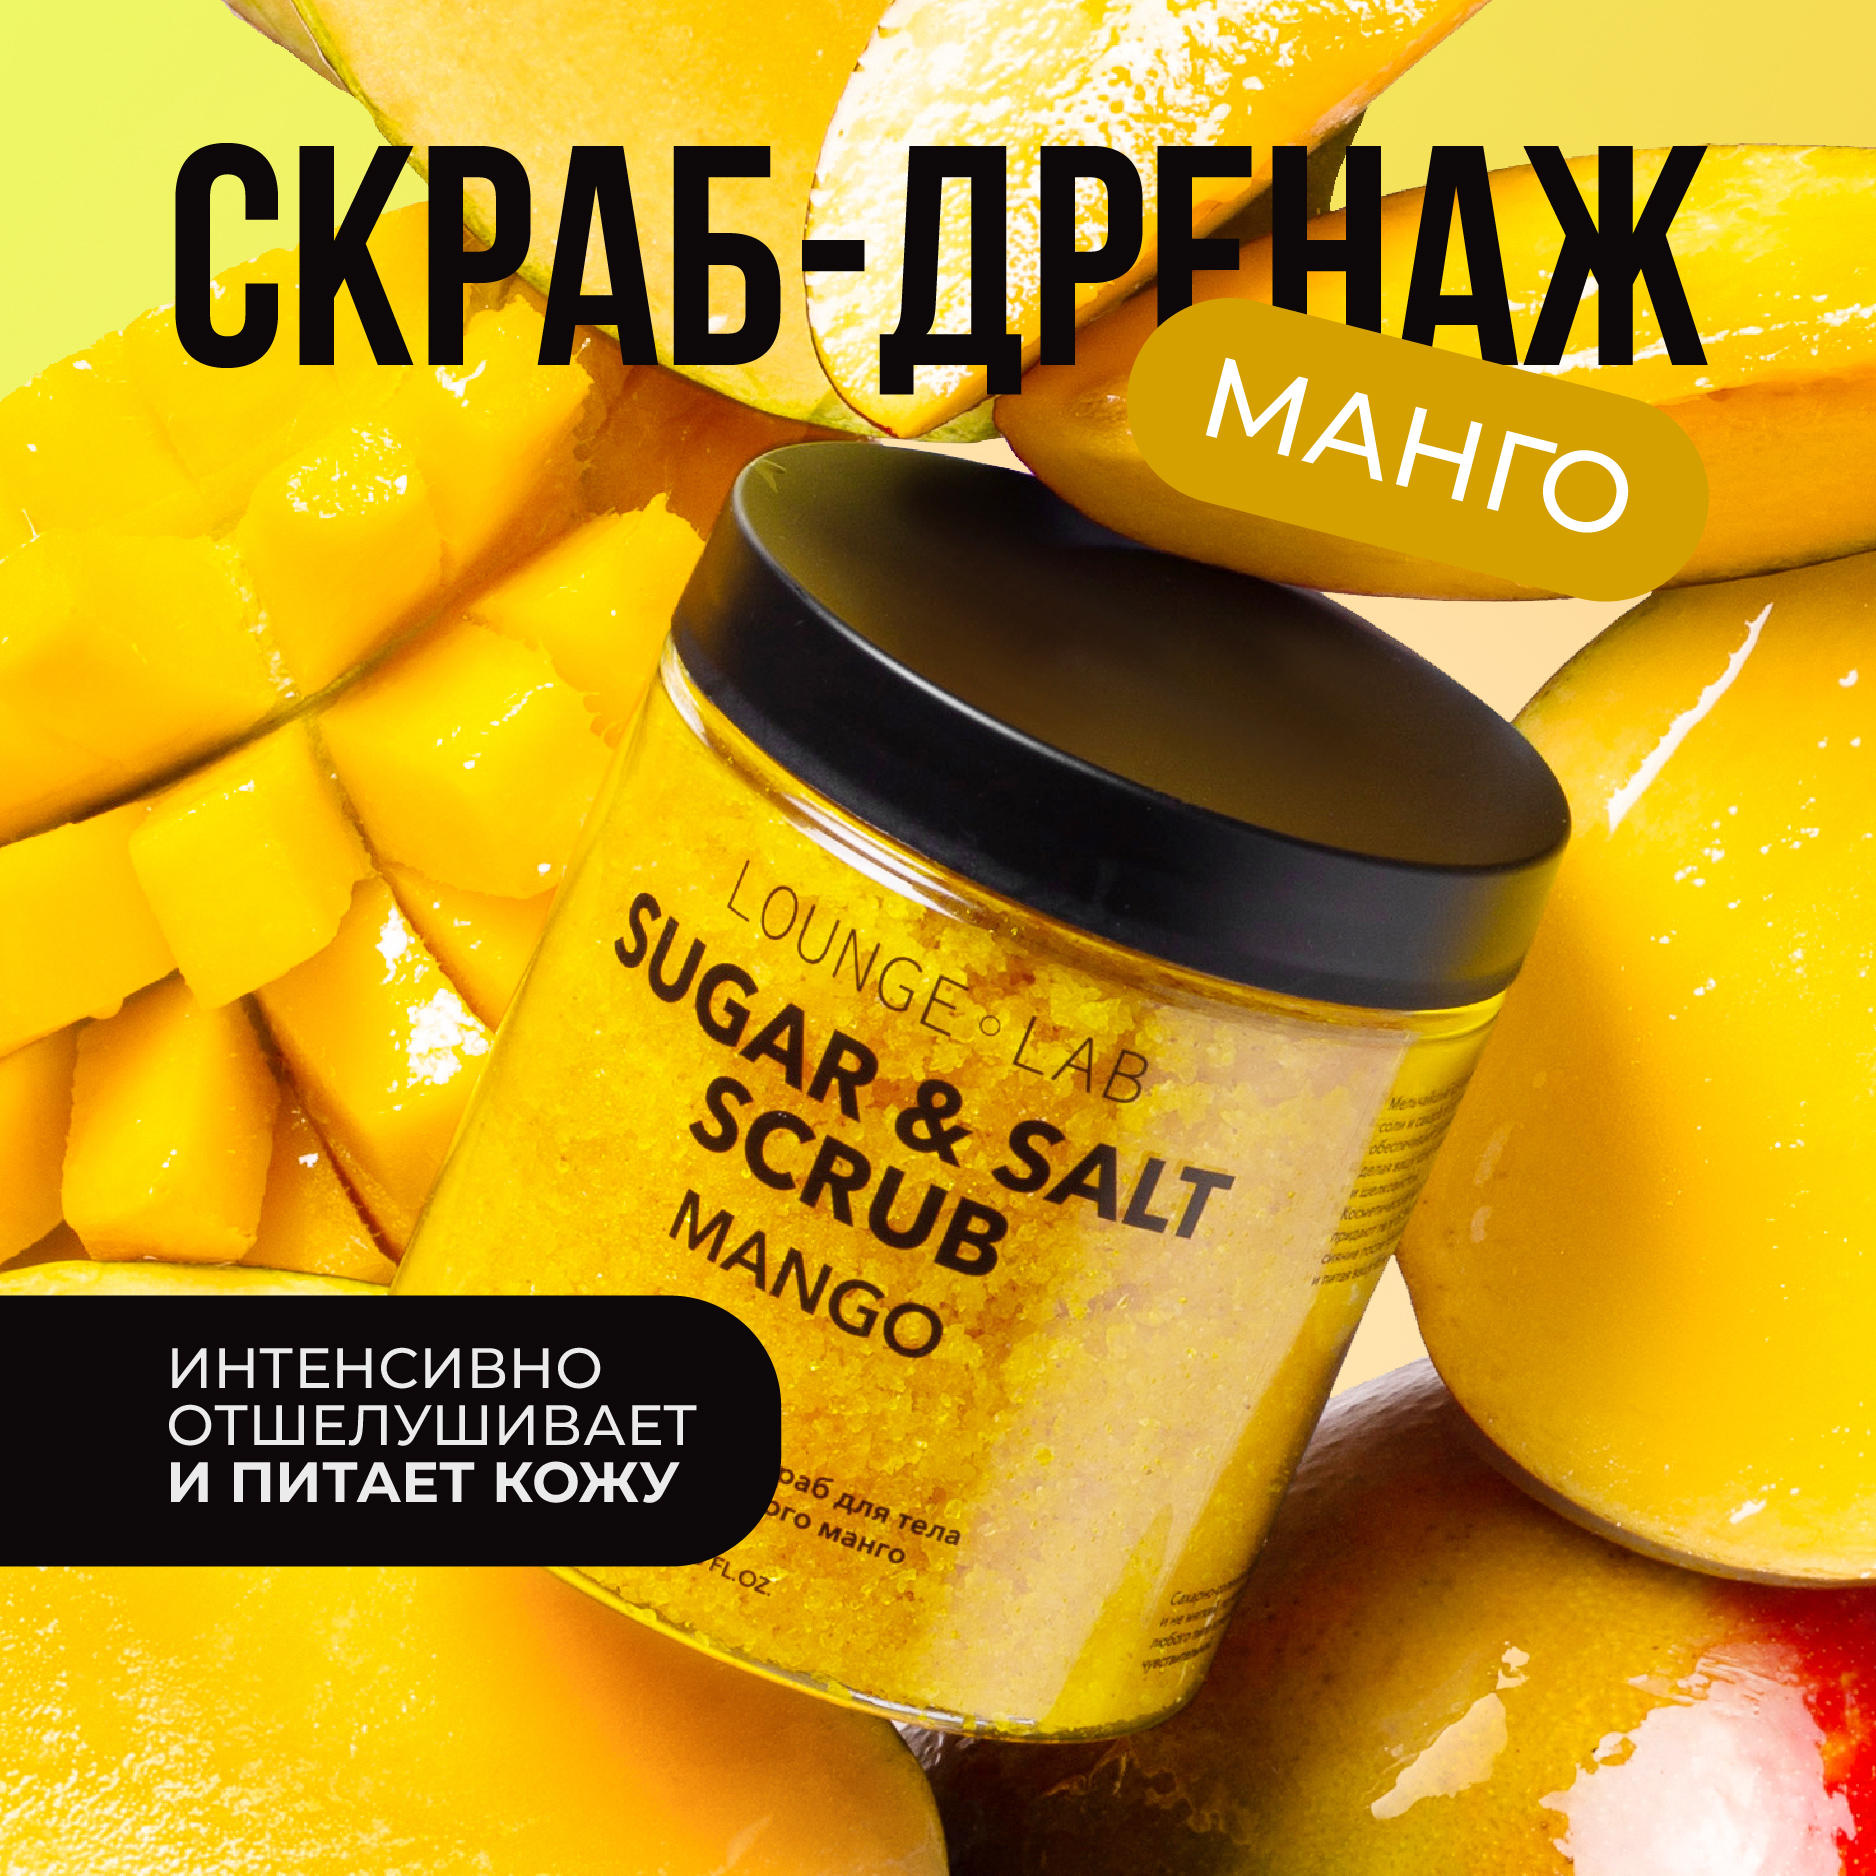 Скраб для тела LOUNGE LAB Сочный манго антицеллюлитный сахарно-солевой 250 мл skinterria сахарный антицеллюлитный скраб для тела с маслами манго 250